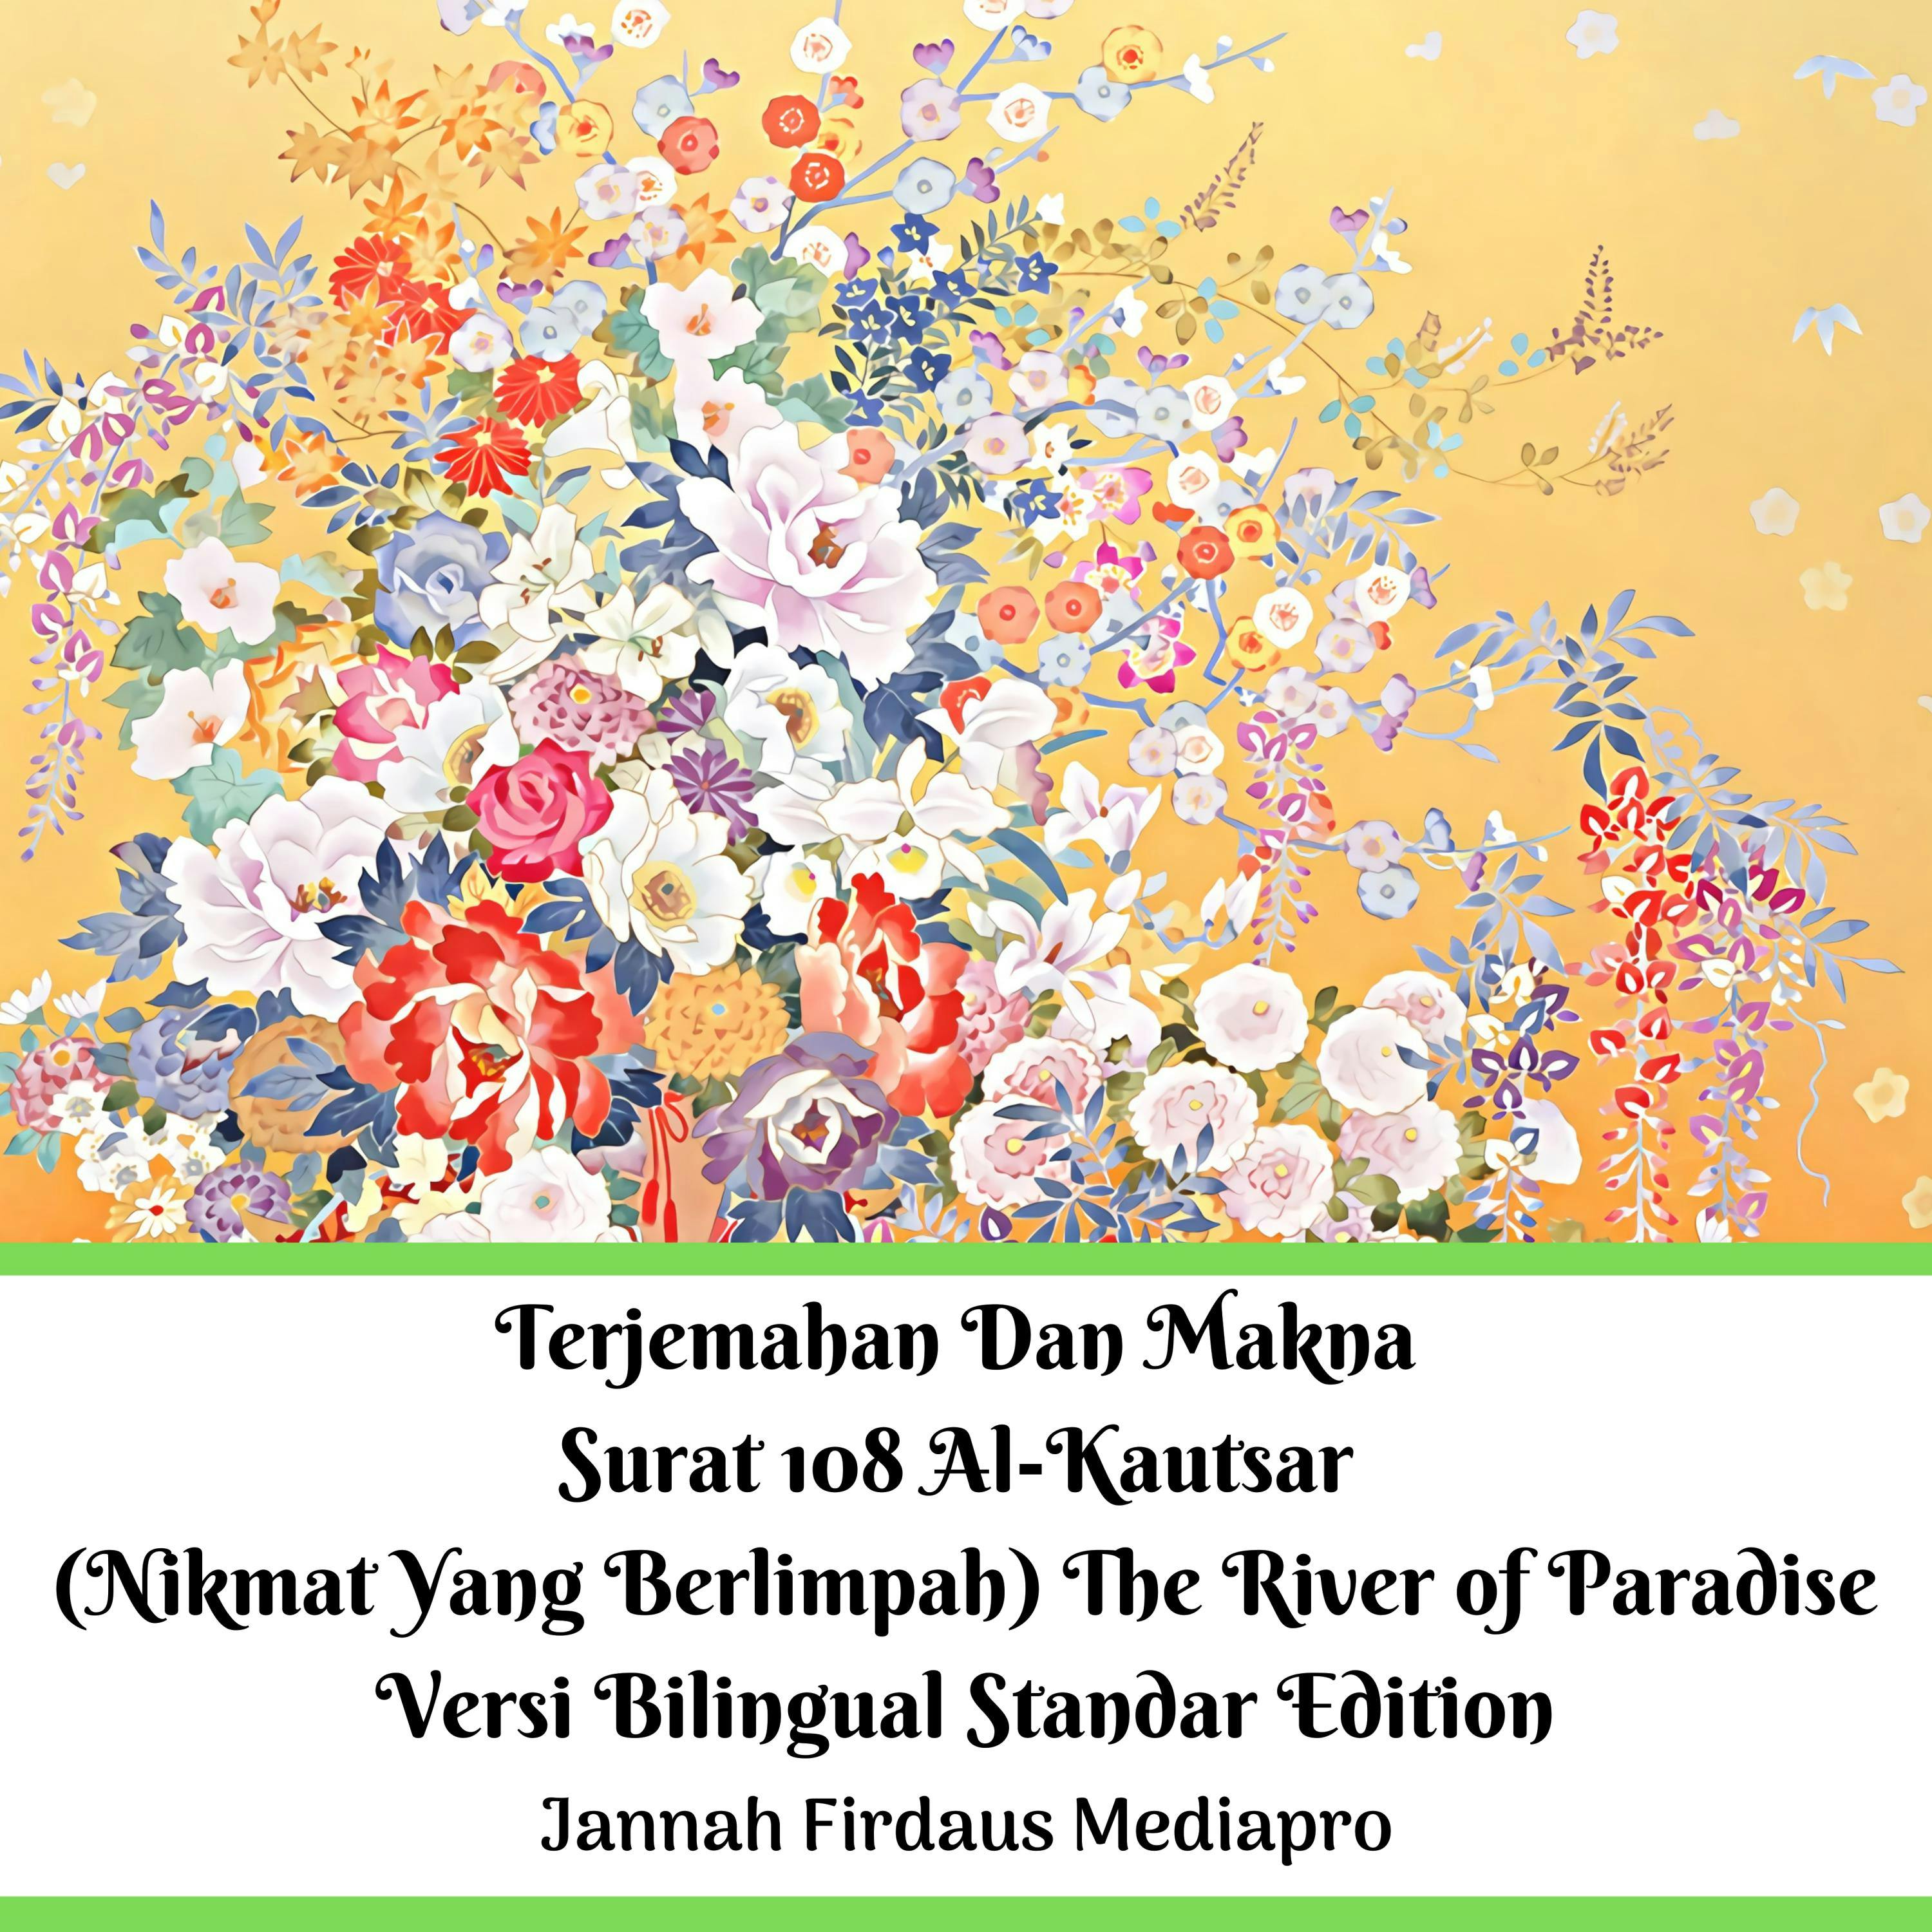 Terjemahan Dan Makna Surat 108 Al-Kautsar (Nikmat Yang Berlimpah) The River of Paradise Versi Bilingual Standar Edition - undefined